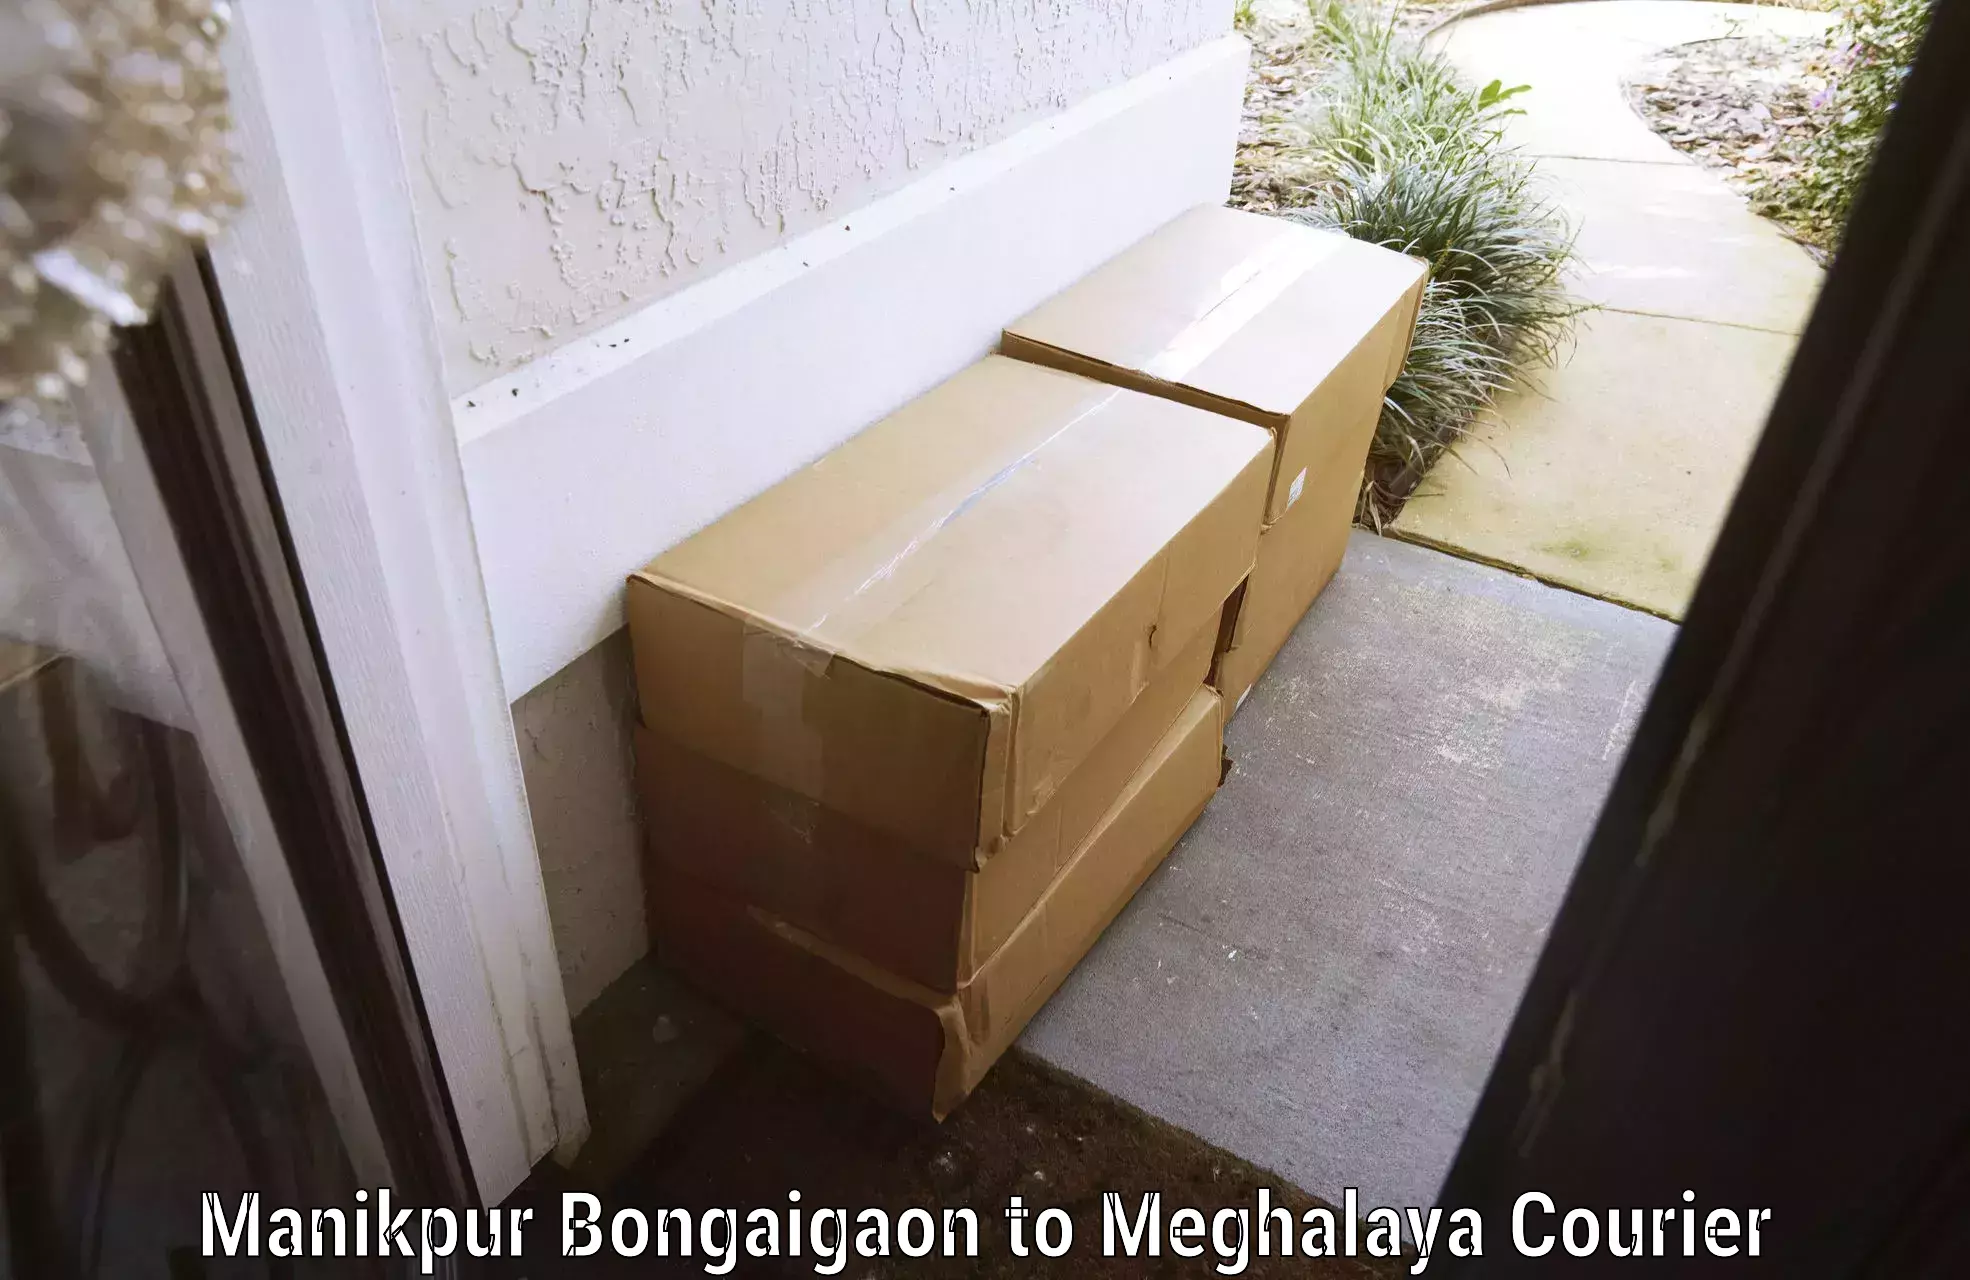 Baggage shipping service Manikpur Bongaigaon to Marshillong